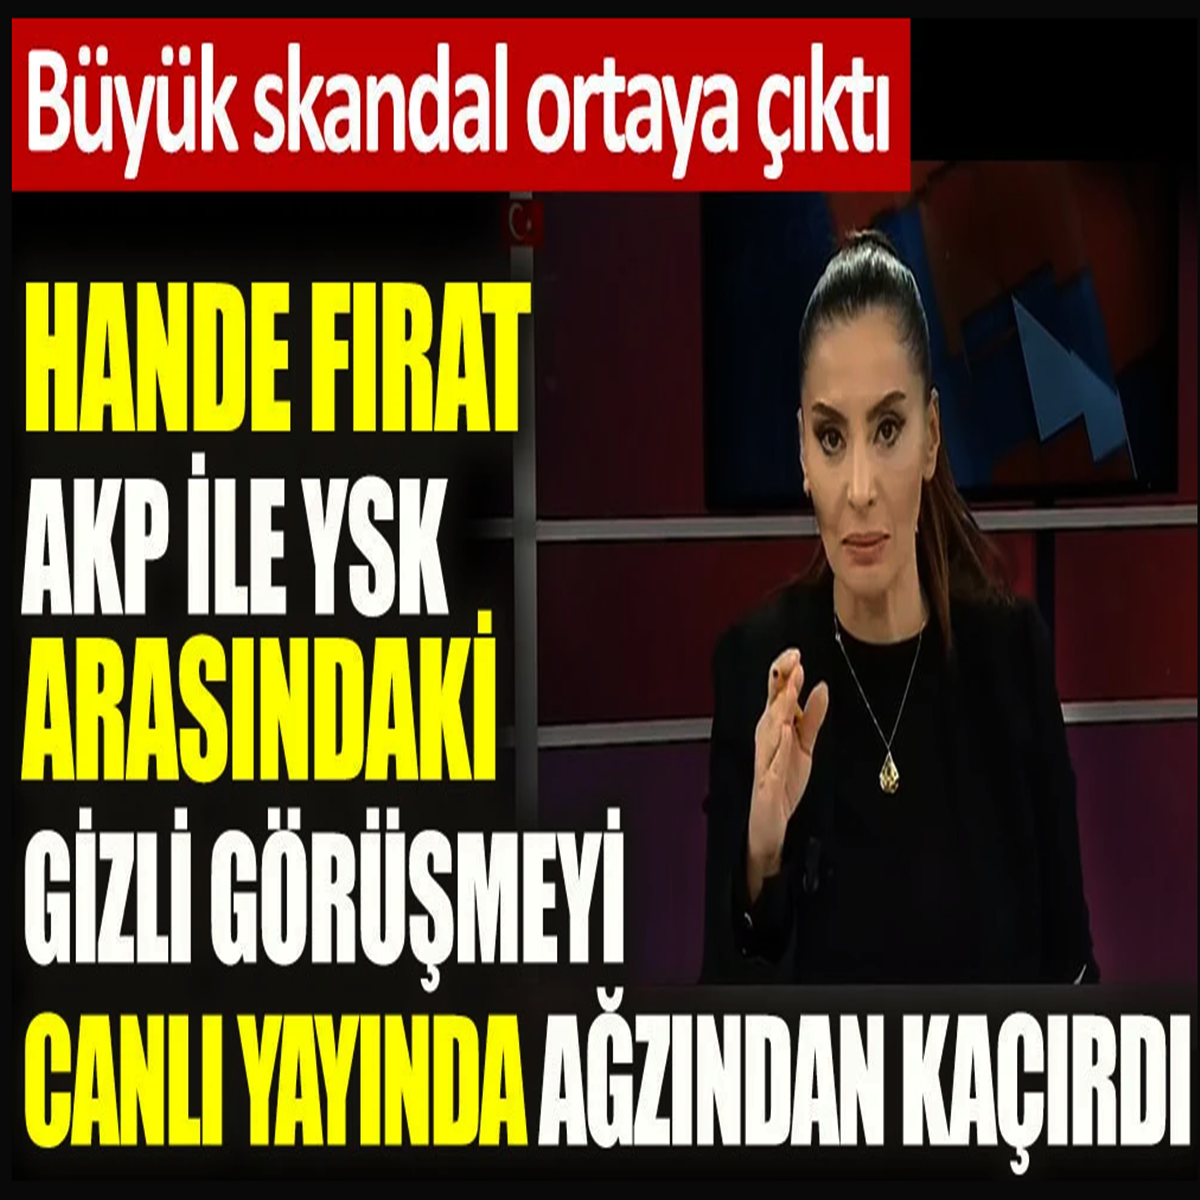 Hande Fırat AKP ile YSK arasındaki gizli görüşmeyi canlı yayında ağzından kaçırdı. Büyük skandal ortaya çıktı